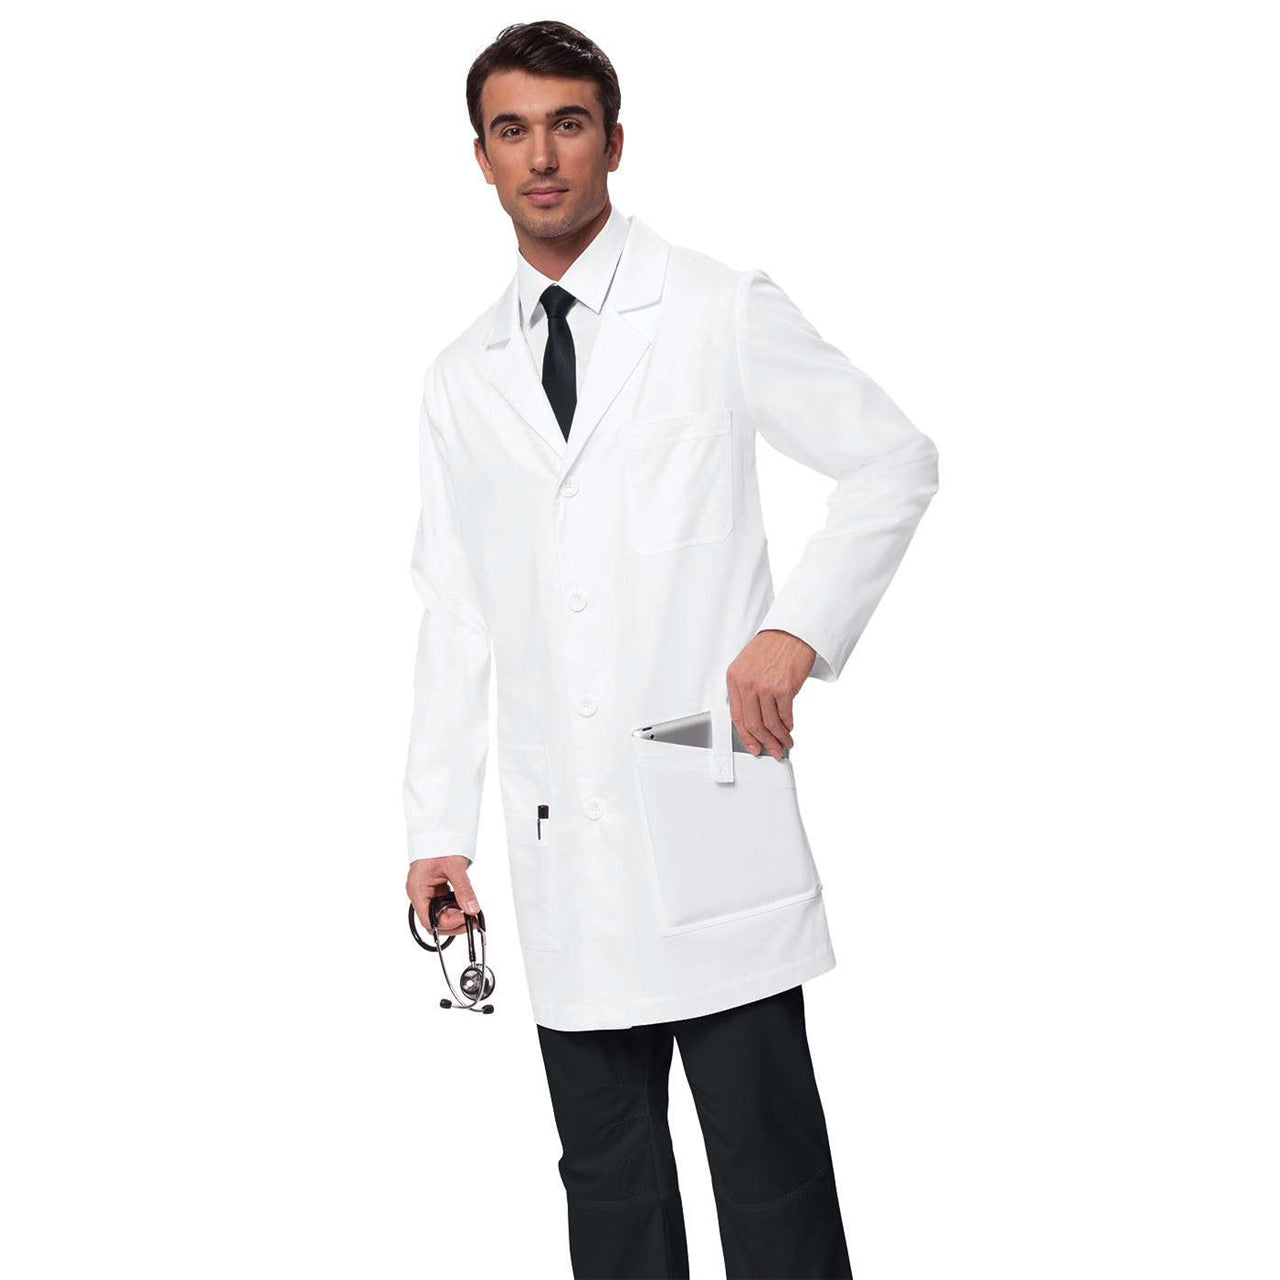 JACK Classic button-front lab coat for men